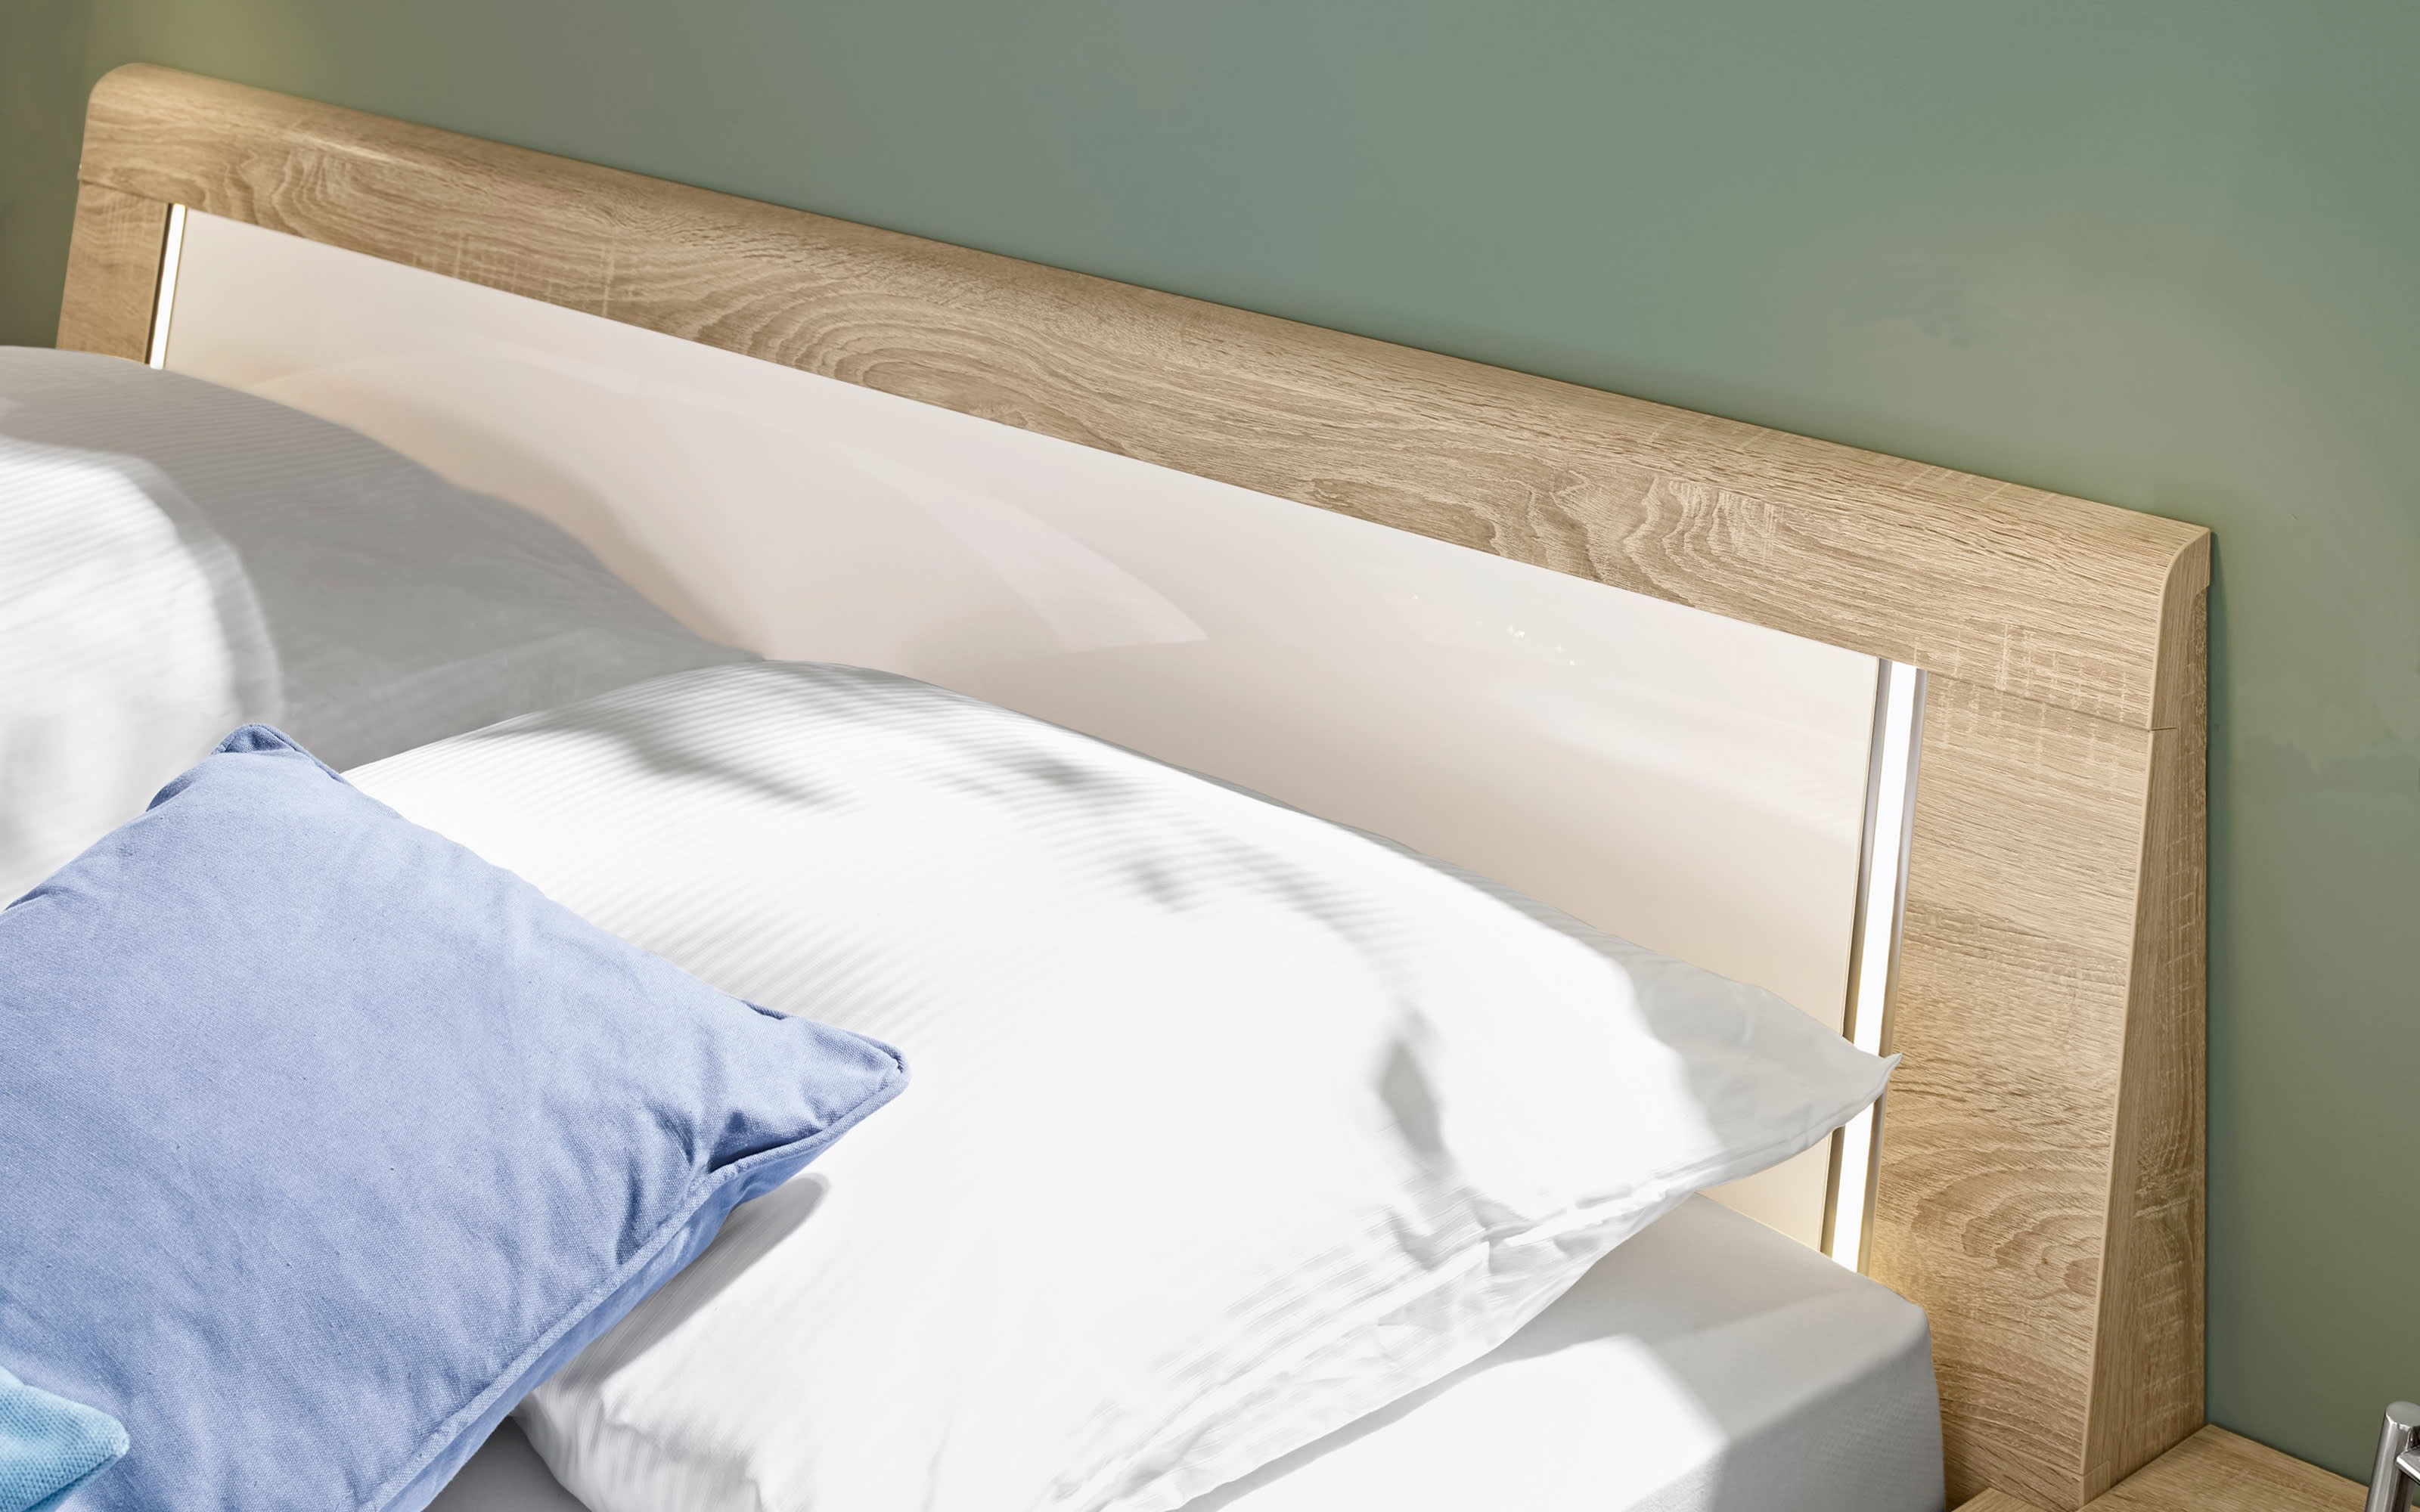 Schlafzimmer Zelo, Lack bianco weiß Hochglanz, Absetzungen Eiche macao, 180 x 200 cm, Schrank 302 x 223 cm